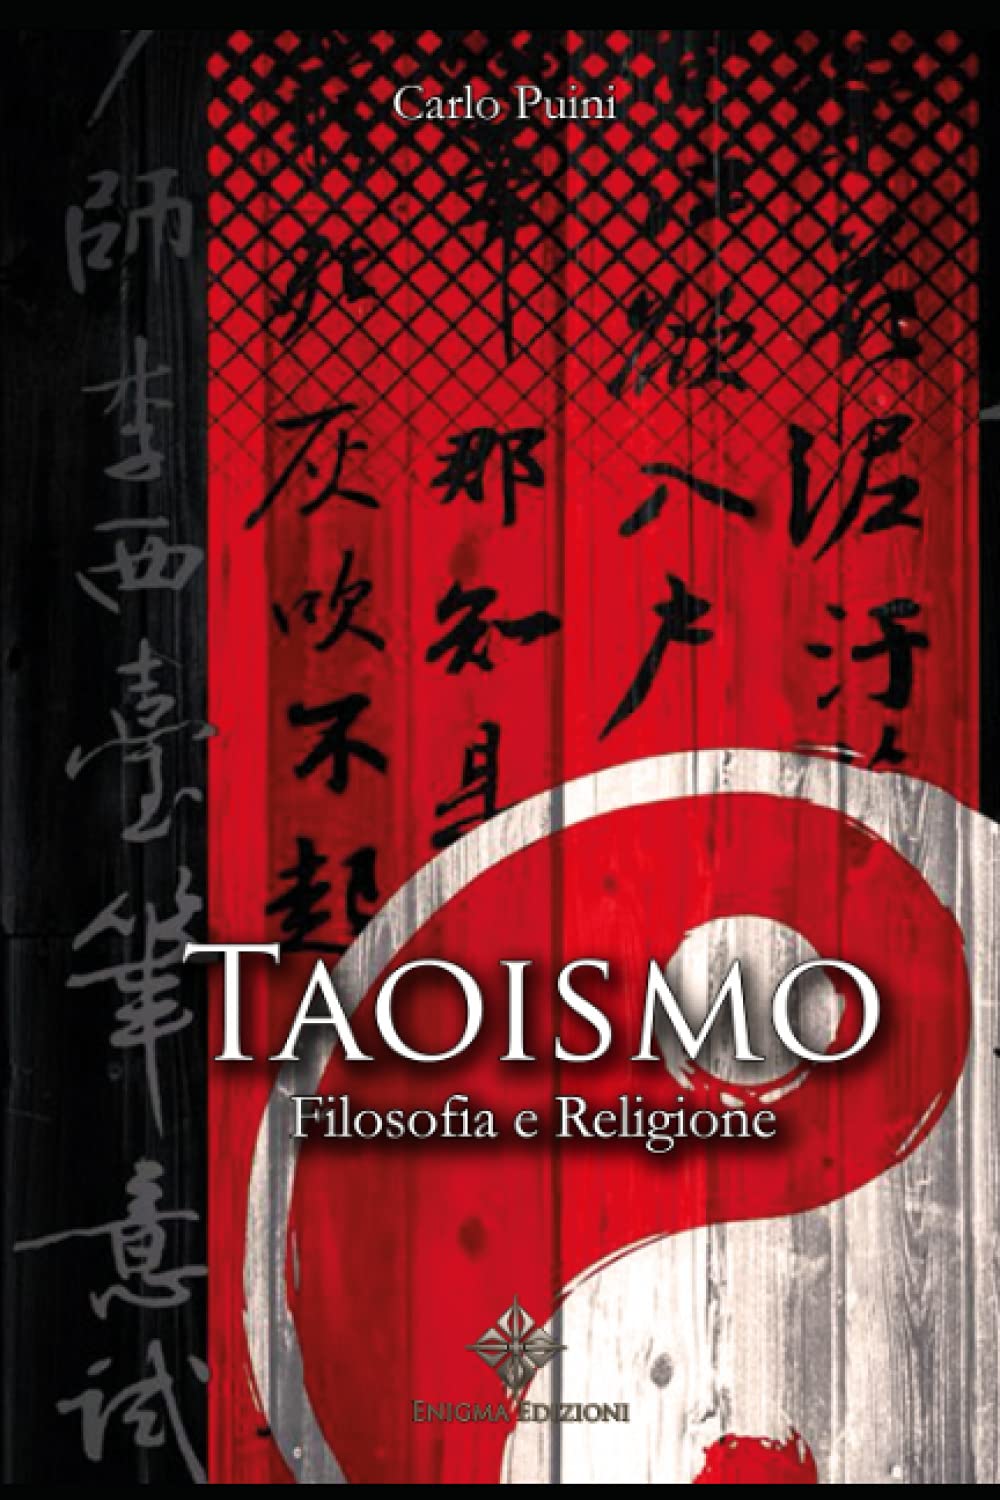 Taoismo: Filosofia e Religione